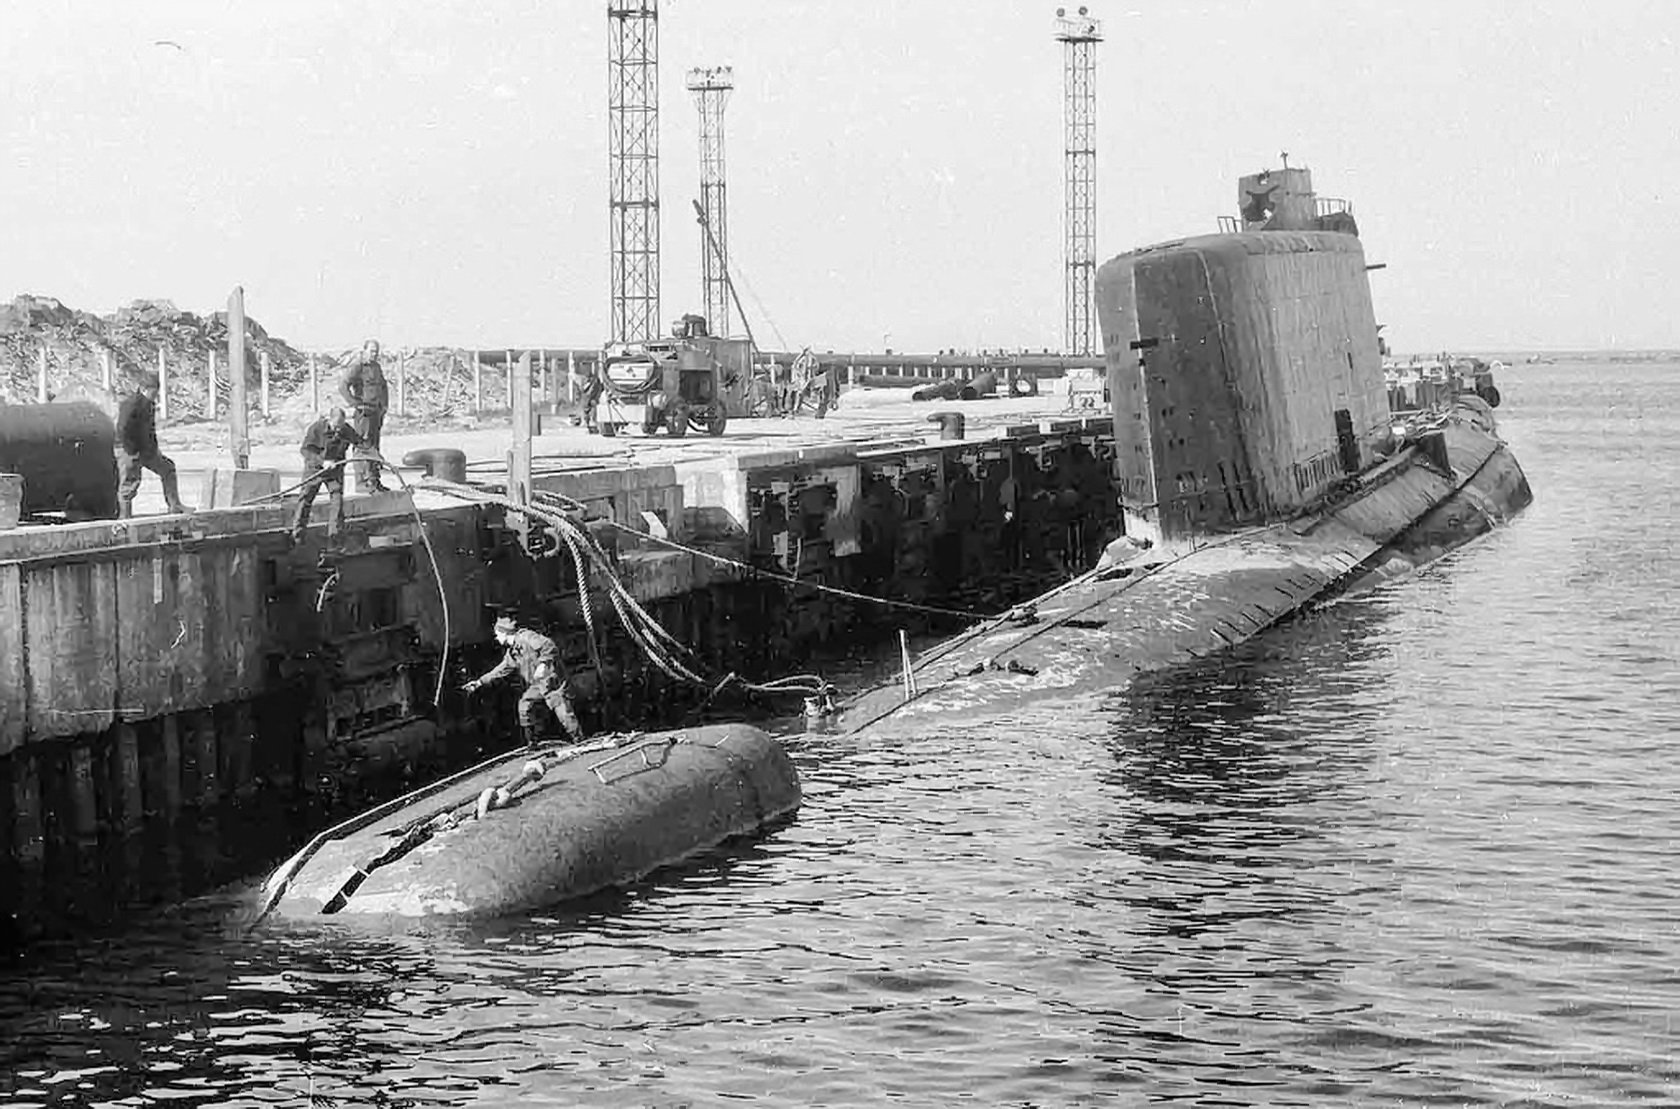 Лодка б н. Проект 629 подводная лодка. Лиепая база подводных лодок СССР. Пл 629 проект б Конюшкова. 14 Эскадра подводных лодок в Лиепае.